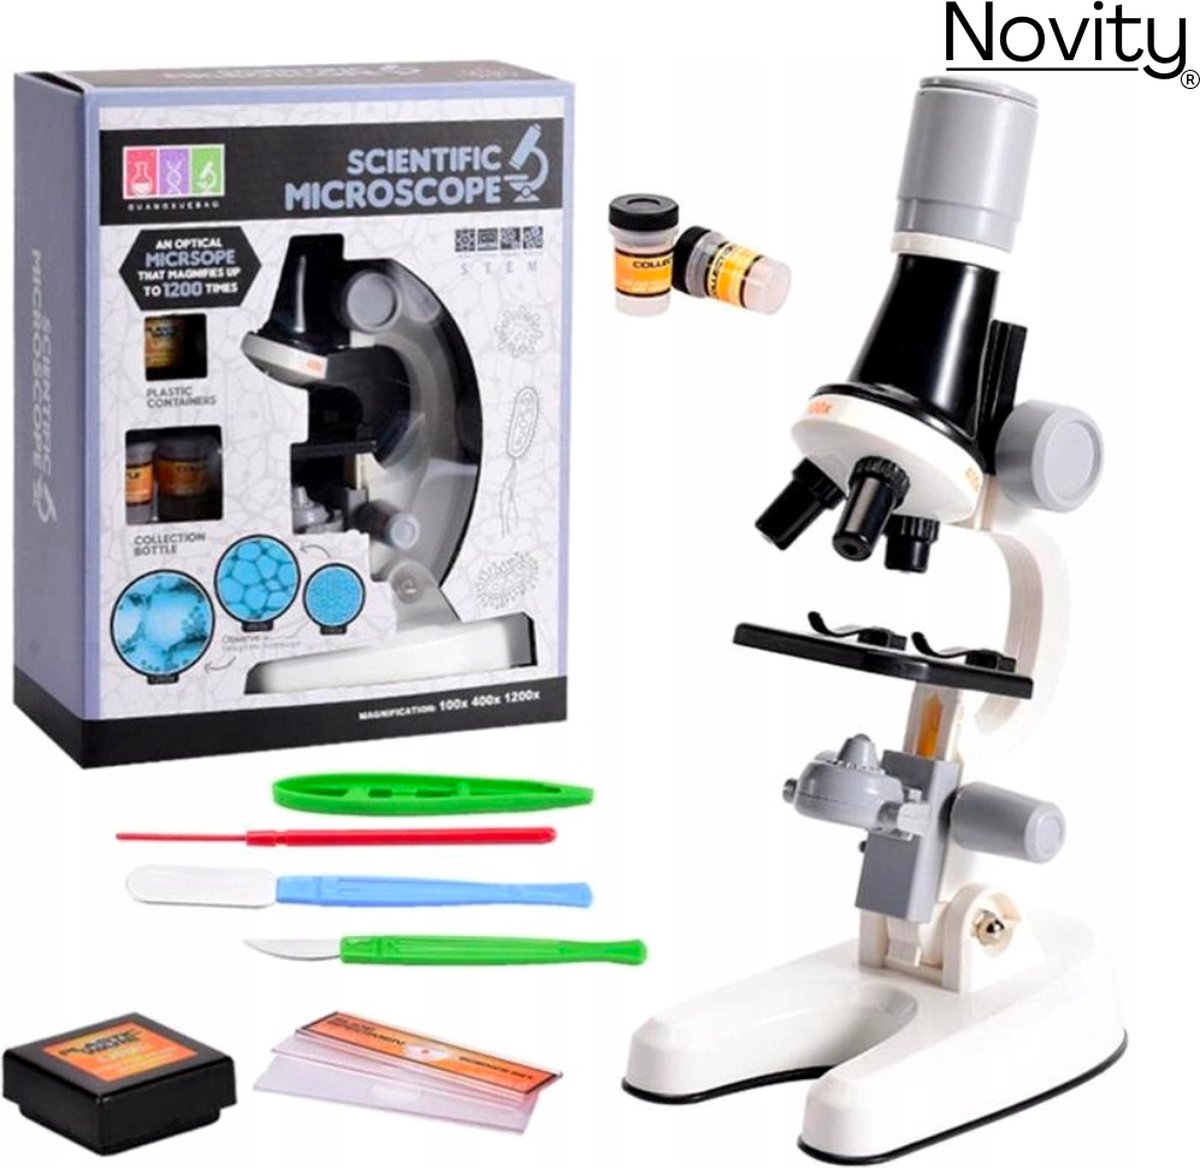 Novity® Microscoop voor Kinderen - Junior Microscoop - Veel Accessoires - Biologisch - Wetenschap - Educatief - Tot X1200 - LED Verlichting - Kinder Speelgoed - Sinterklaas - Kerst - Wit